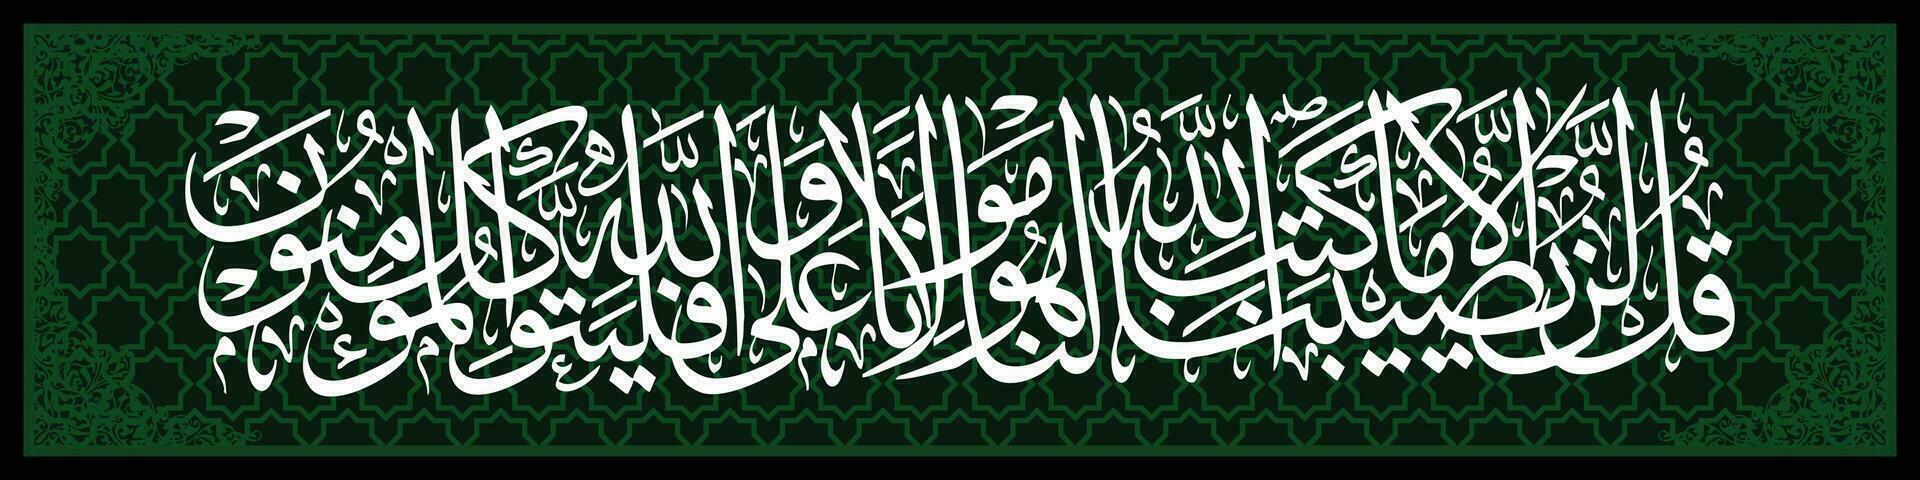 Arabisch schoonschrift met abstract ornament, attaubah 51 welke middelen hij is onze beschermer, en enkel en alleen in Allah Doen de gelovigen zetten hun vertrouwen. vector